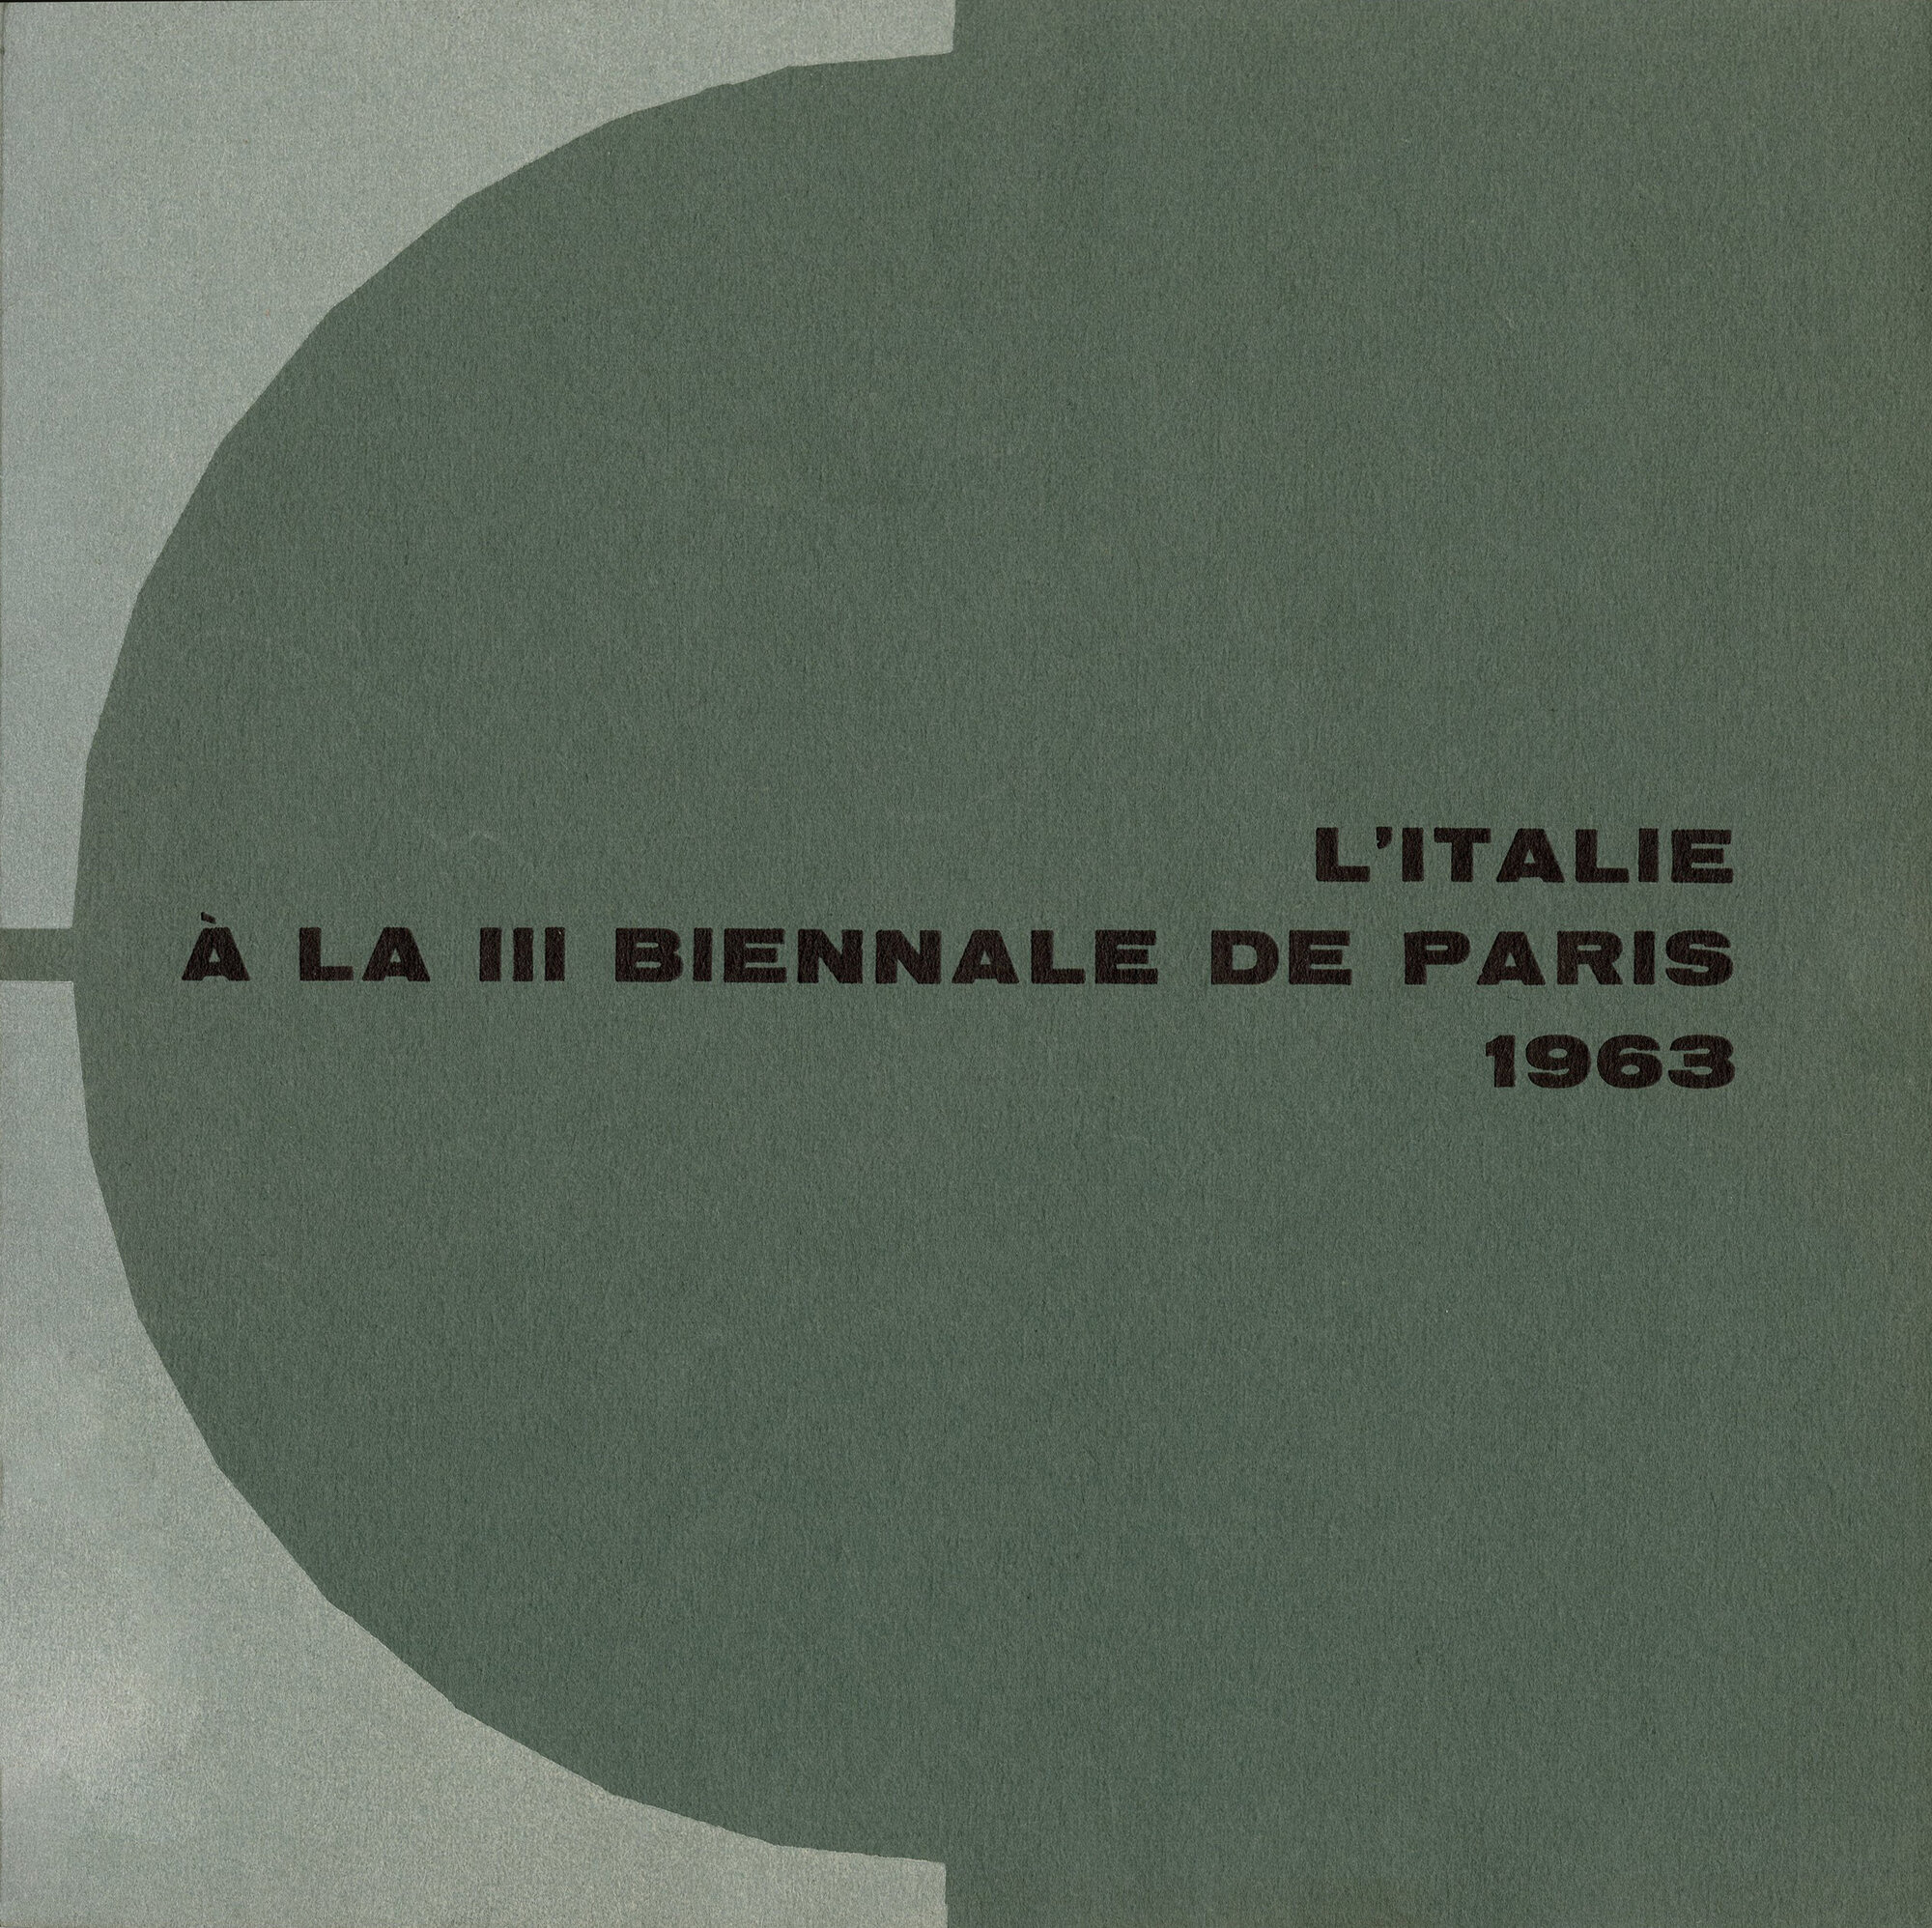 1963_cat_III biennale Paris_1.jpg